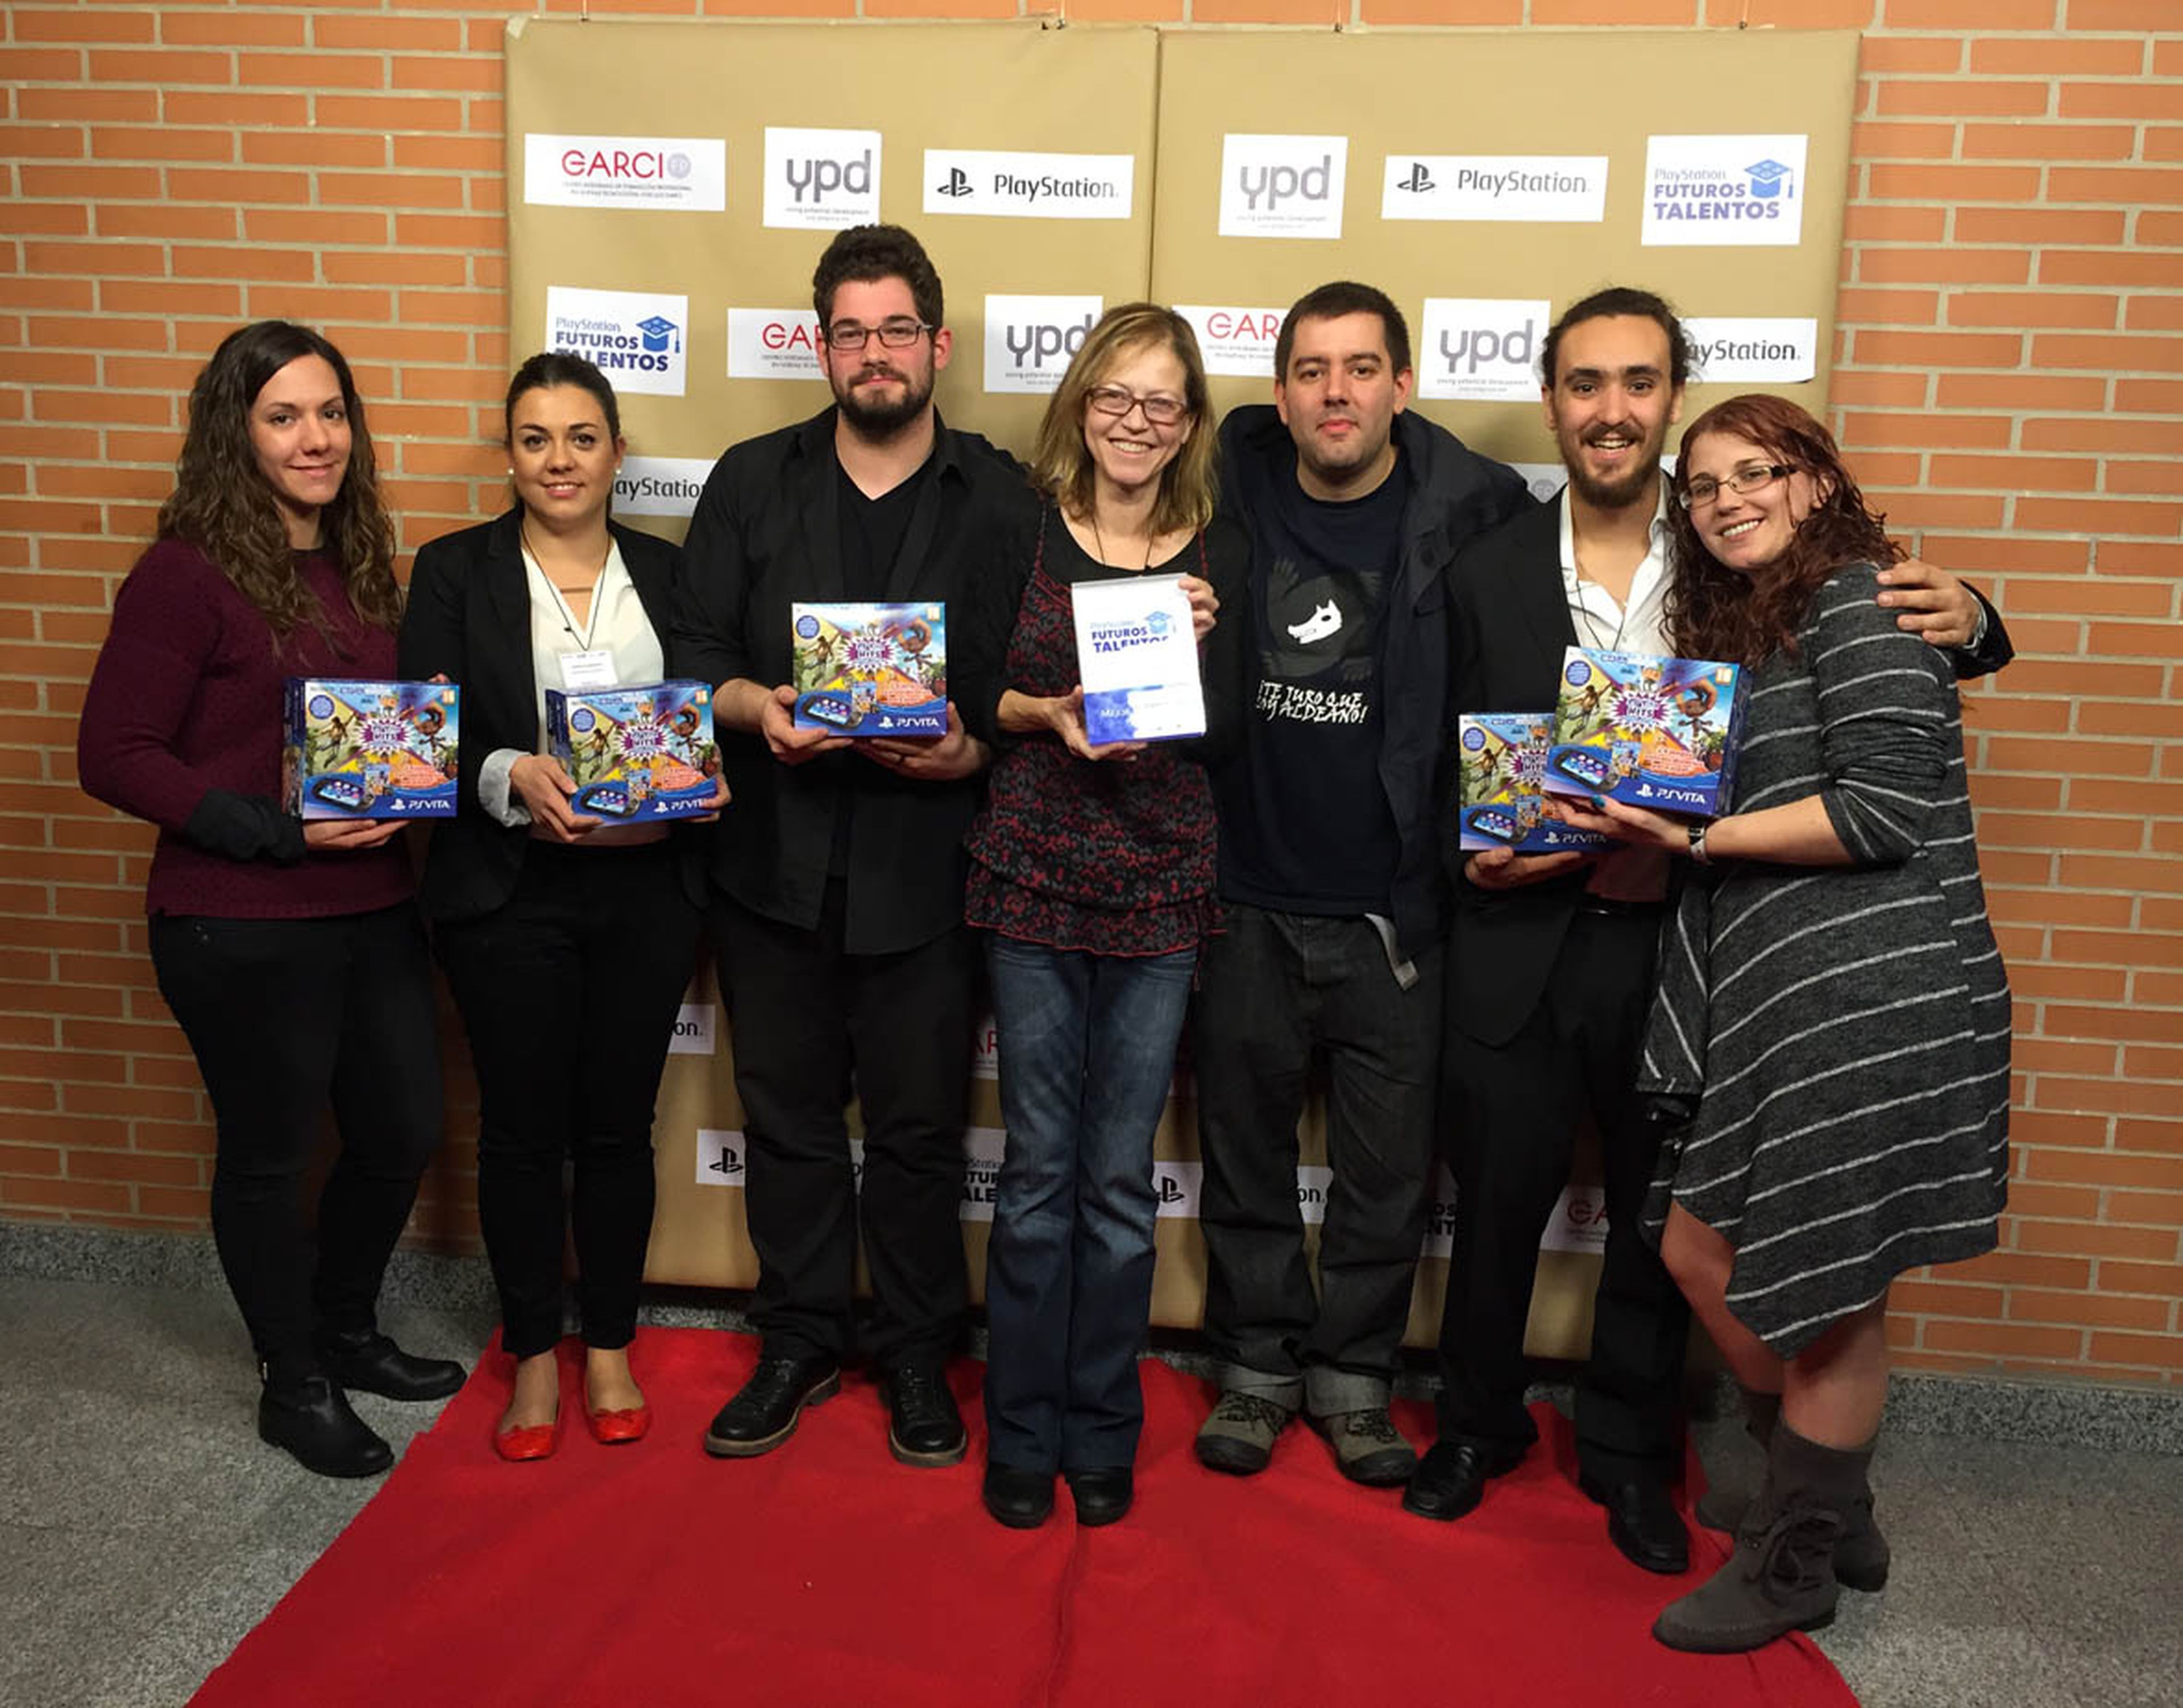 El equipo de Fairy Talling, los ganadores de 'Mejor Videojuego' en los PlayStation Futuros Talentos.